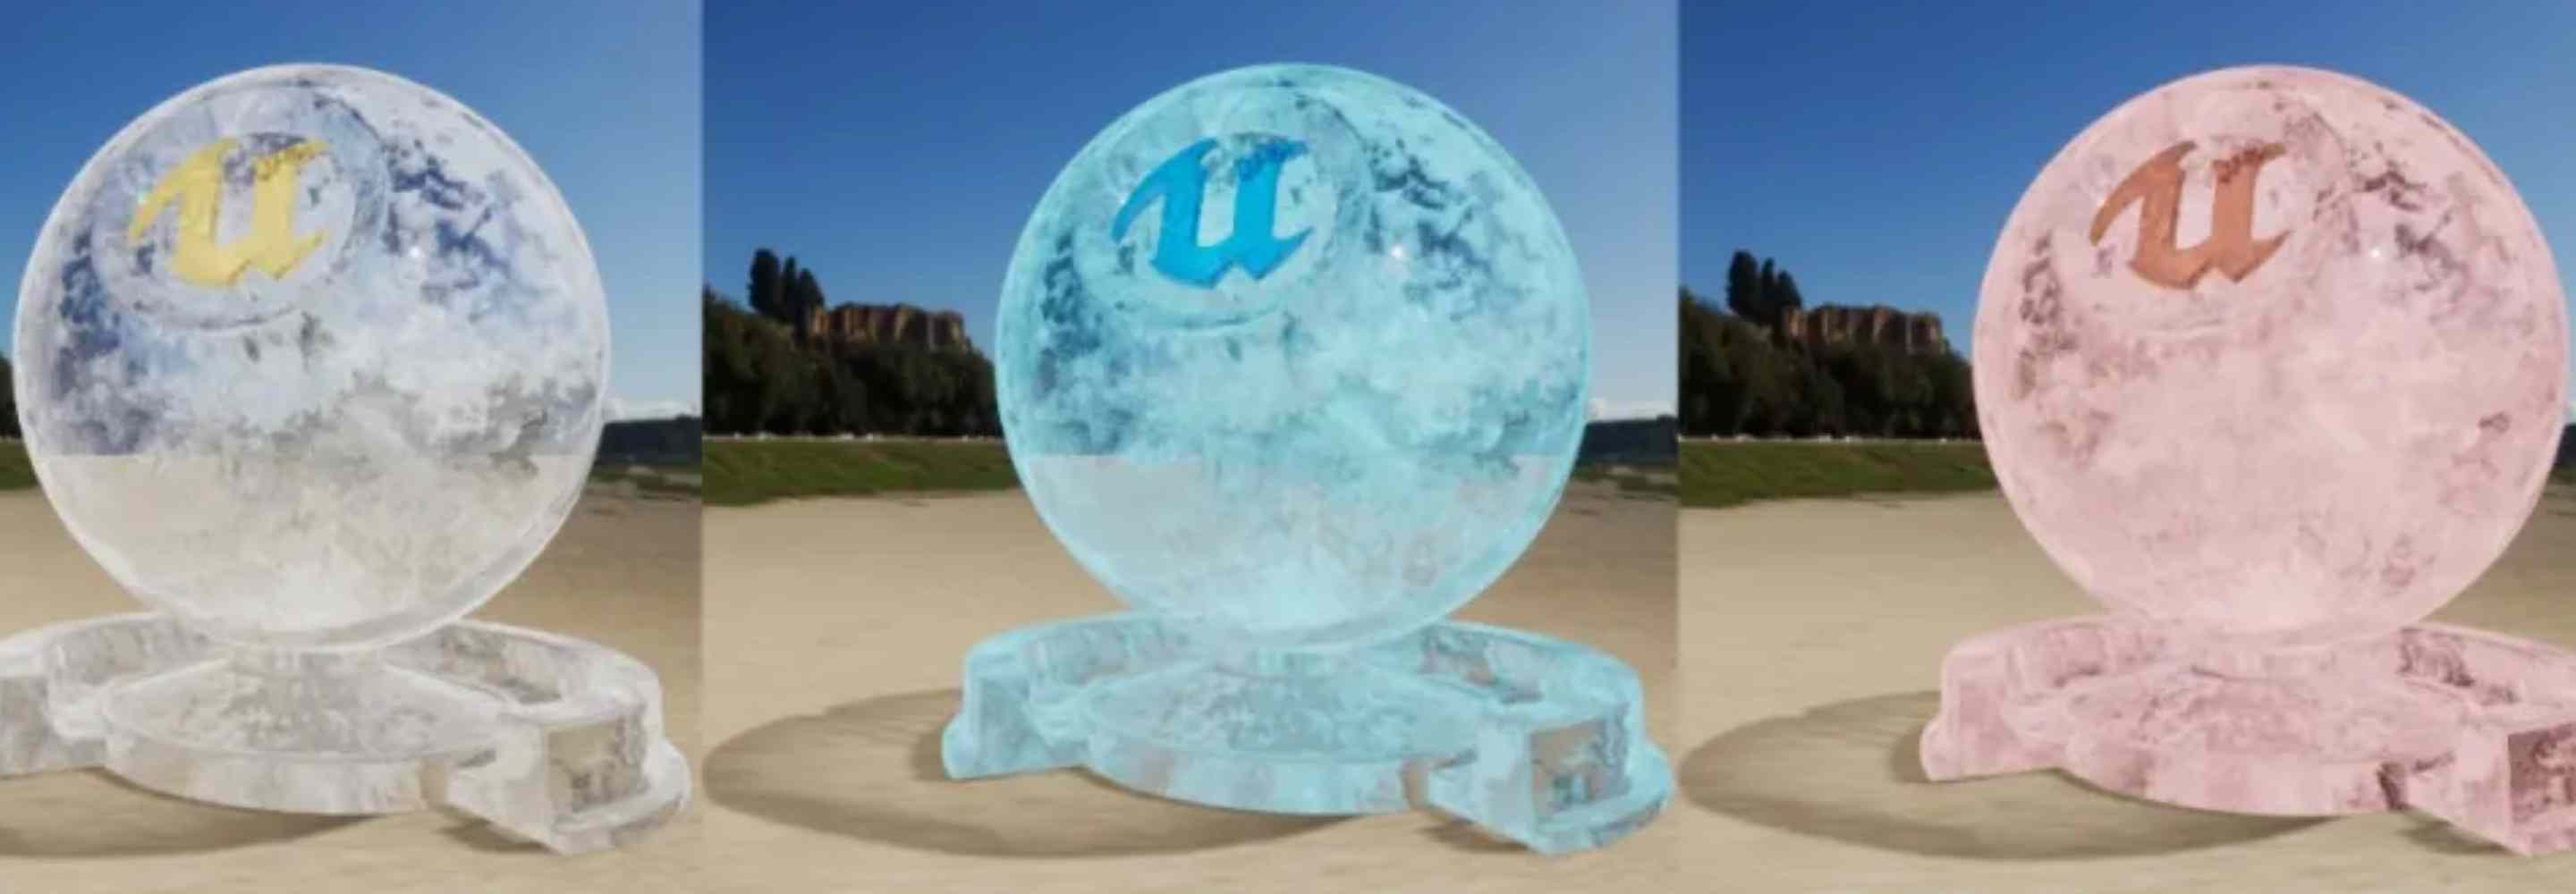 如何用UE4制作假透明冰块材质